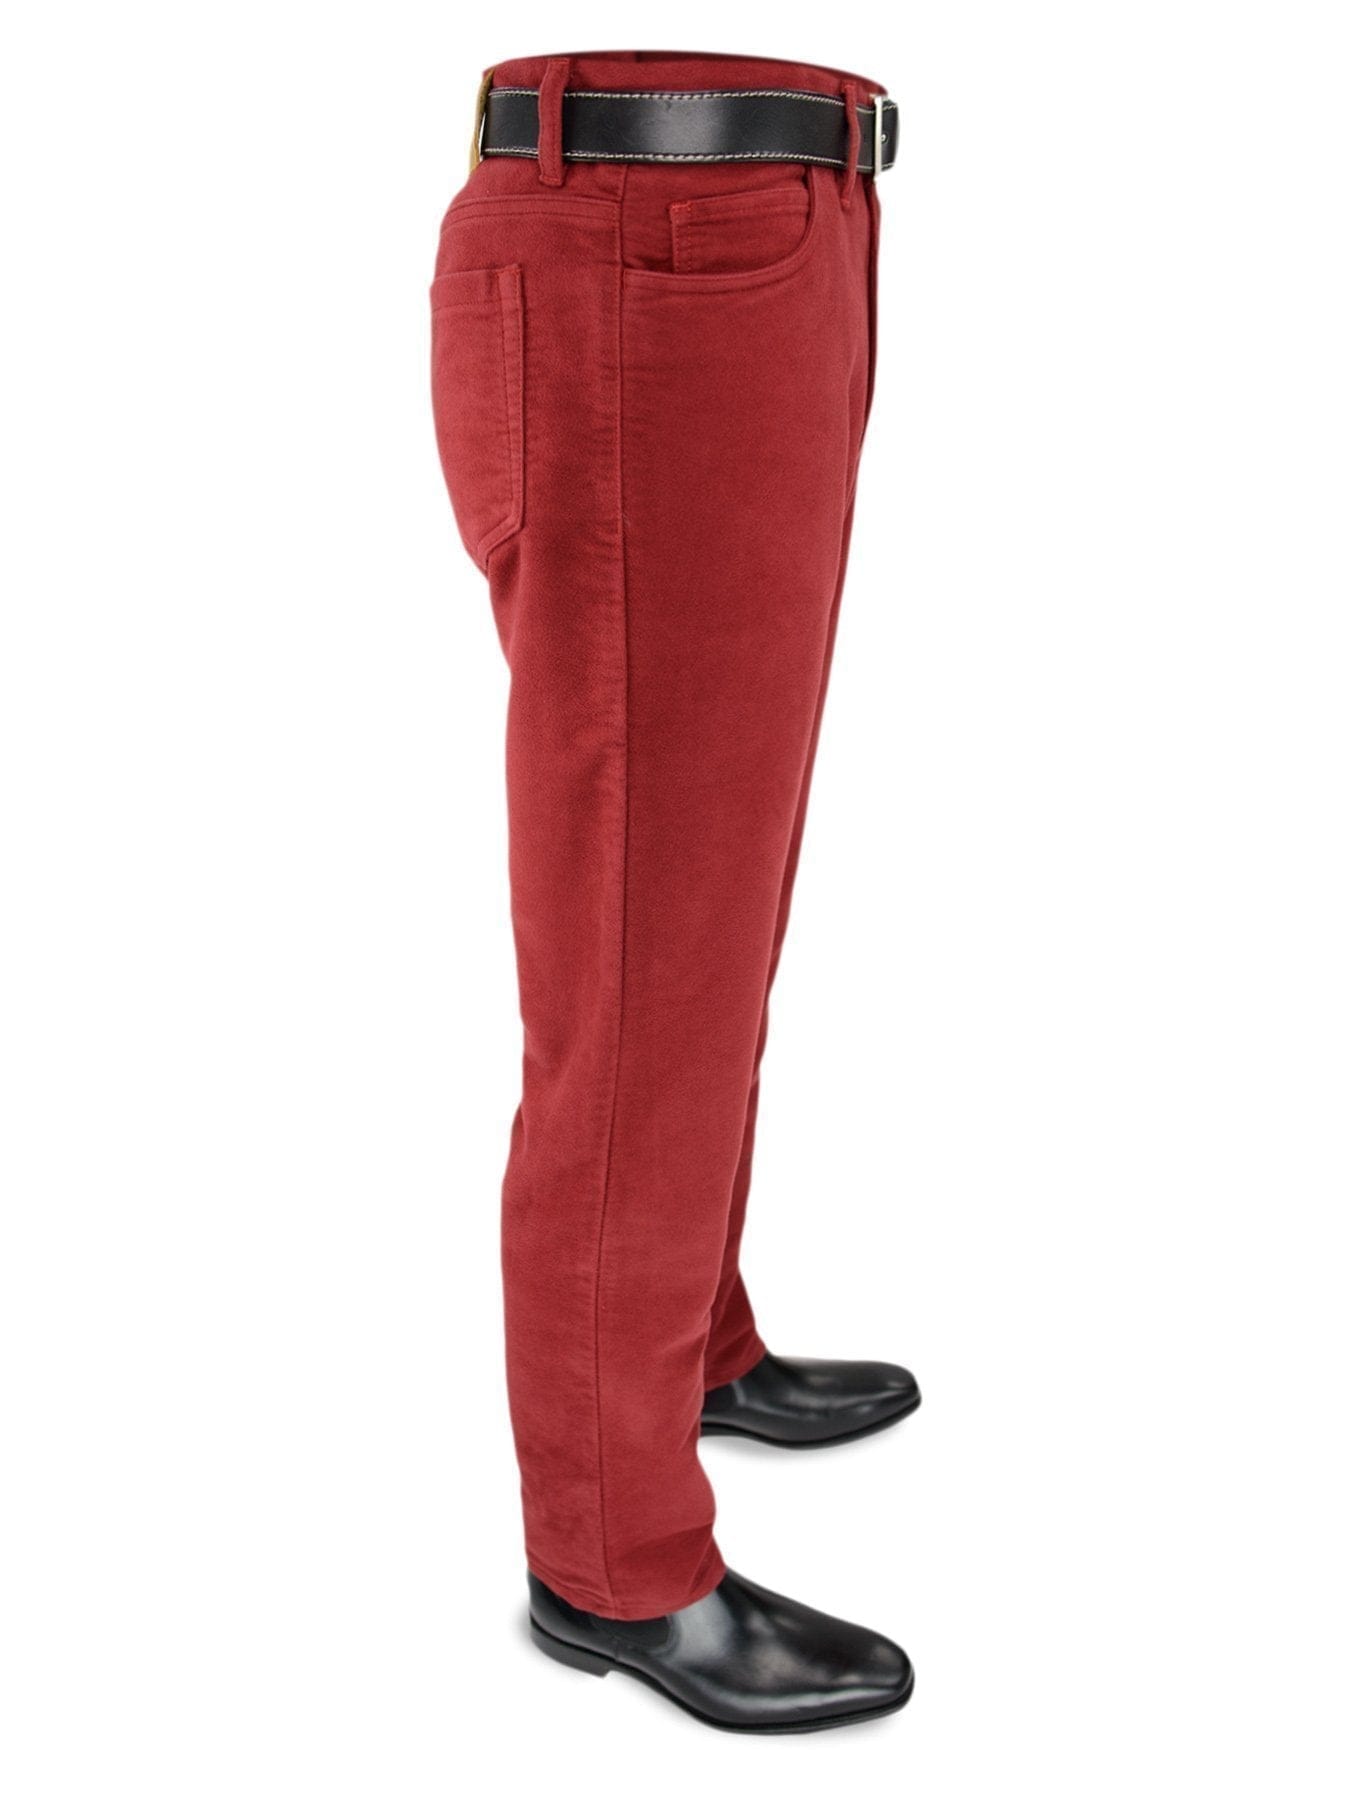 Plain Cranberry Red Cotton Moleskin Jeans